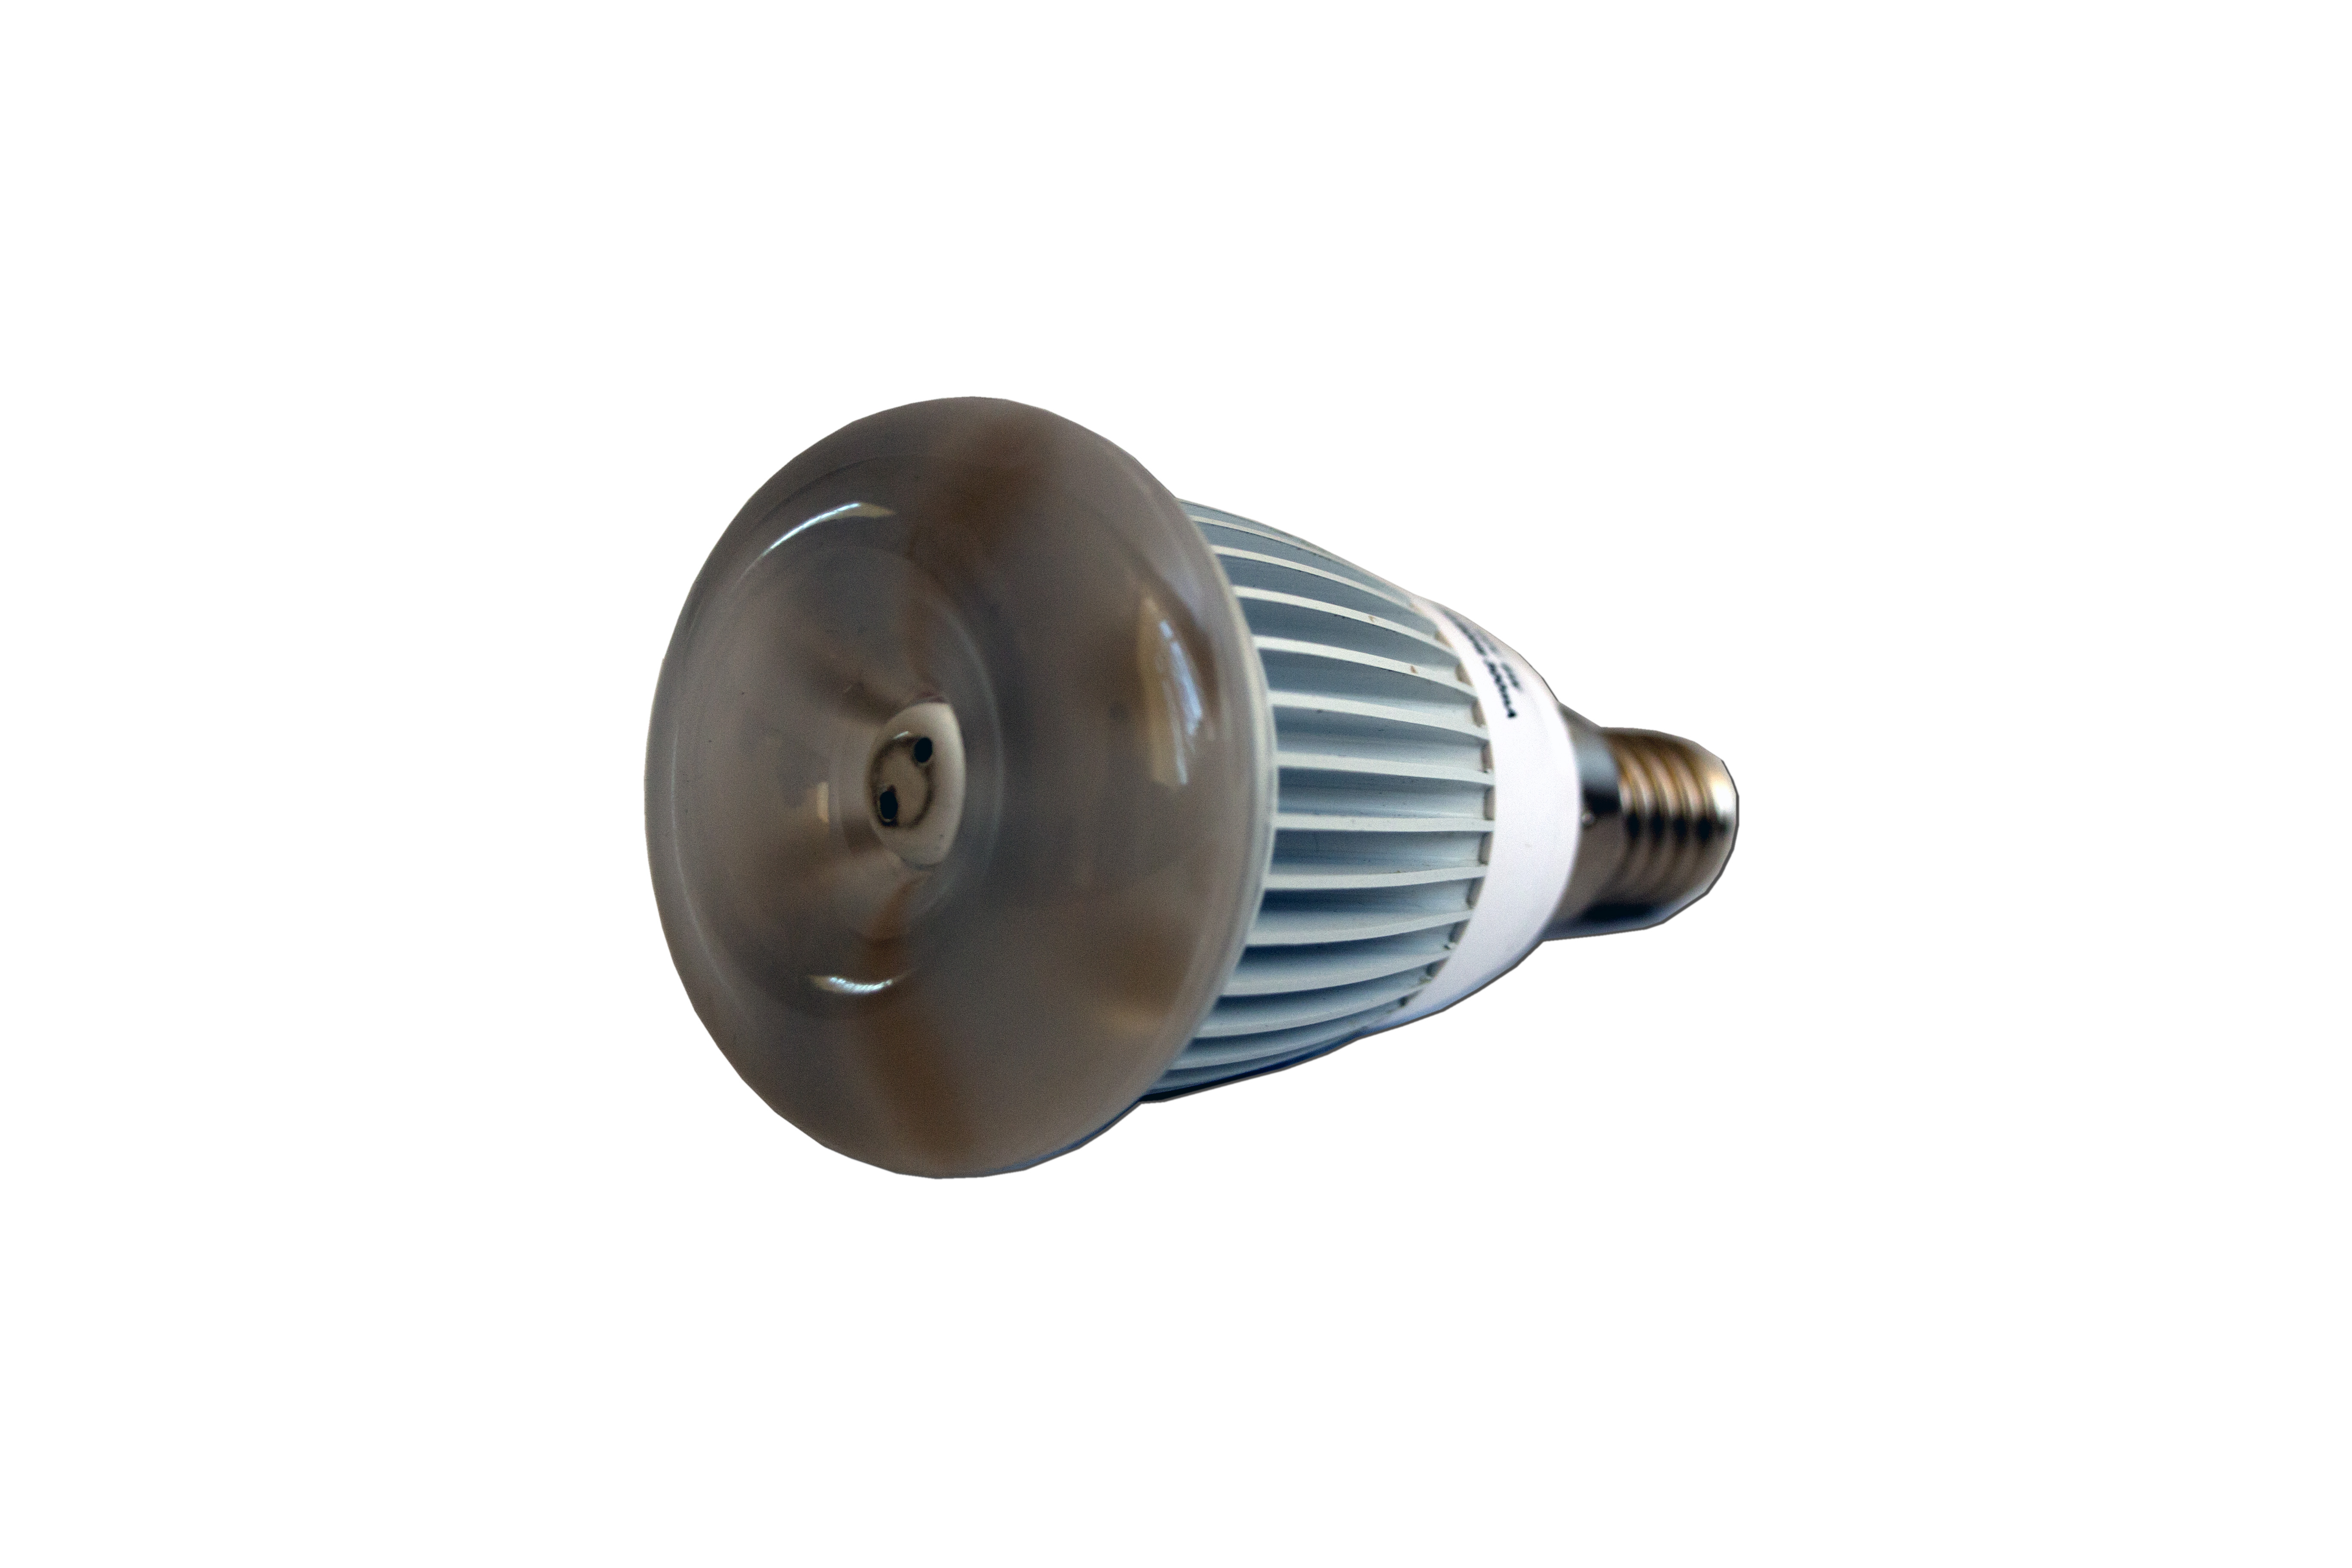 LED lamp TLC07-6-01-001U1 (1)